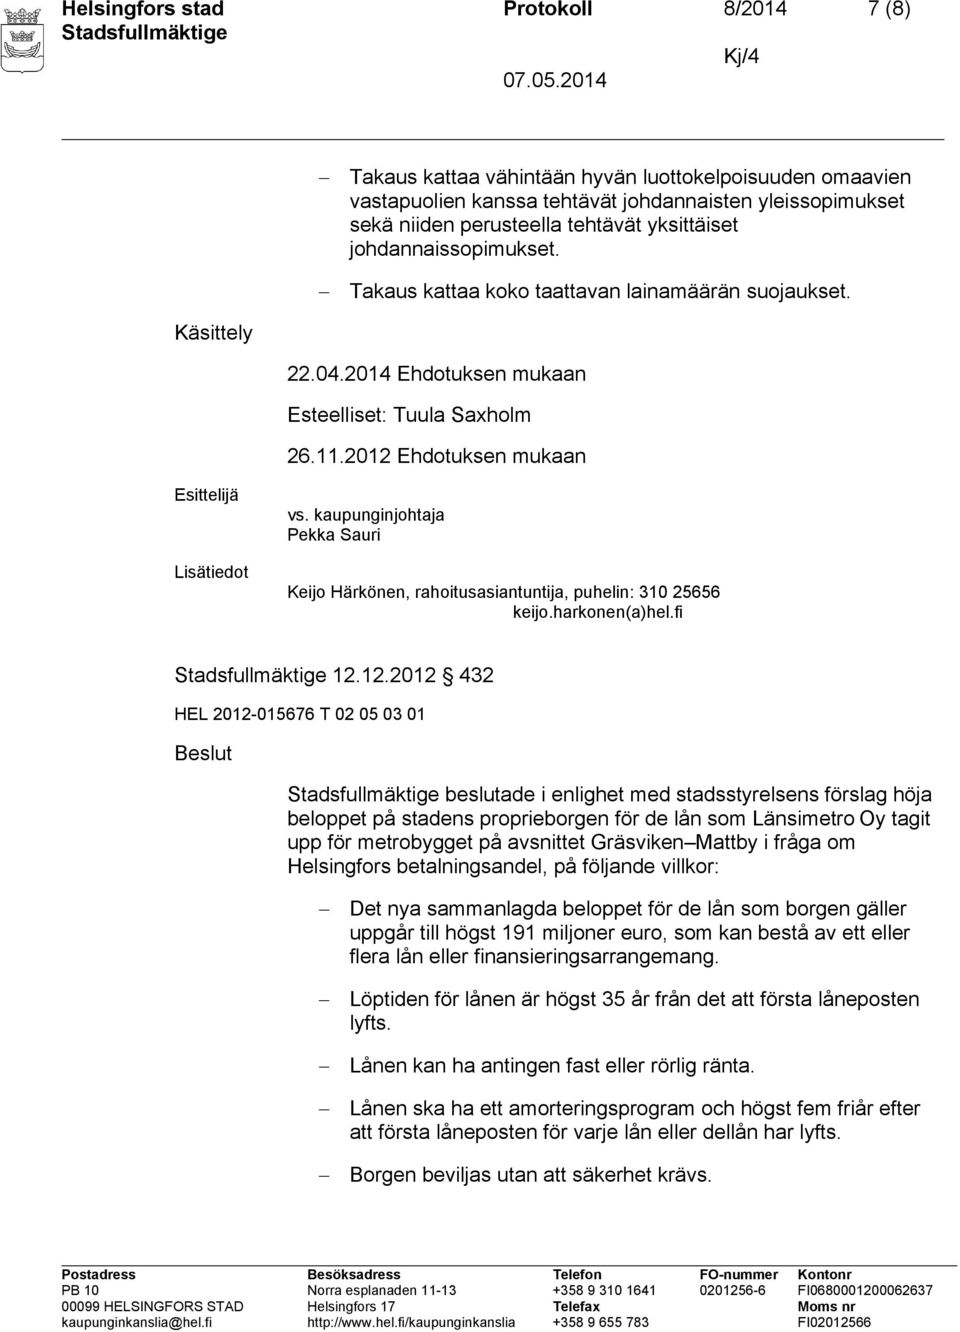 2012 Ehdotuksen mukaan Esittelijä Lisätiedot vs. kaupunginjohtaja Pekka Sauri Keijo Härkönen, rahoitusasiantuntija, puhelin: 310 25656 keijo.harkonen(a)hel.fi 12.12.2012 432 HEL 2012-015676 T 02 05